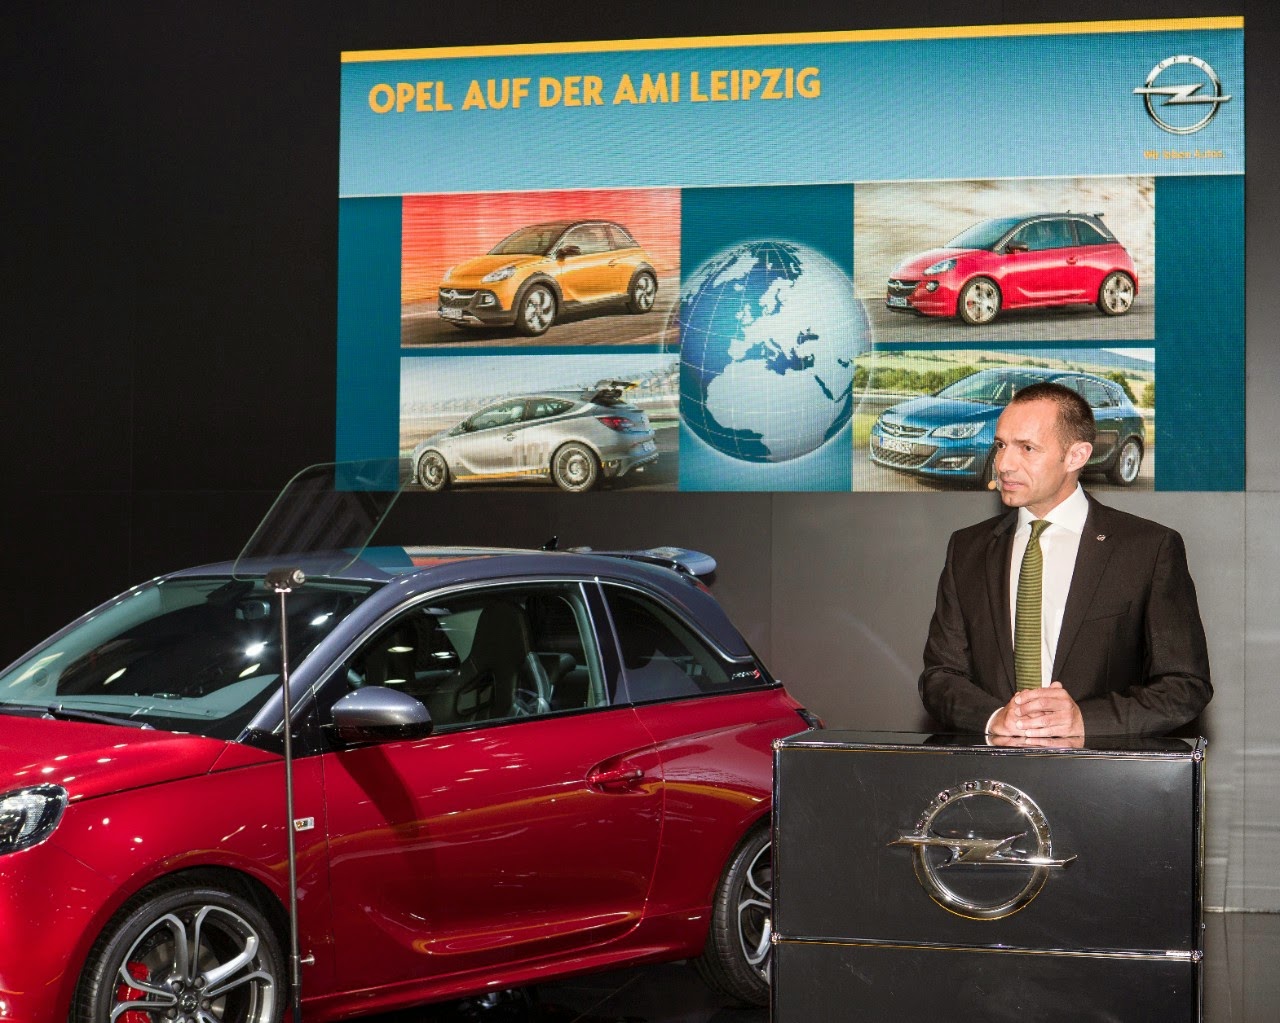 Η Opel ανακοίνωσε τη βασική τιμή για το νέο SUV πόλης Mini-Crossover Opel ADAM ROCKS που έρχεται στις 30 Ιουνίου - Φωτογραφία 6